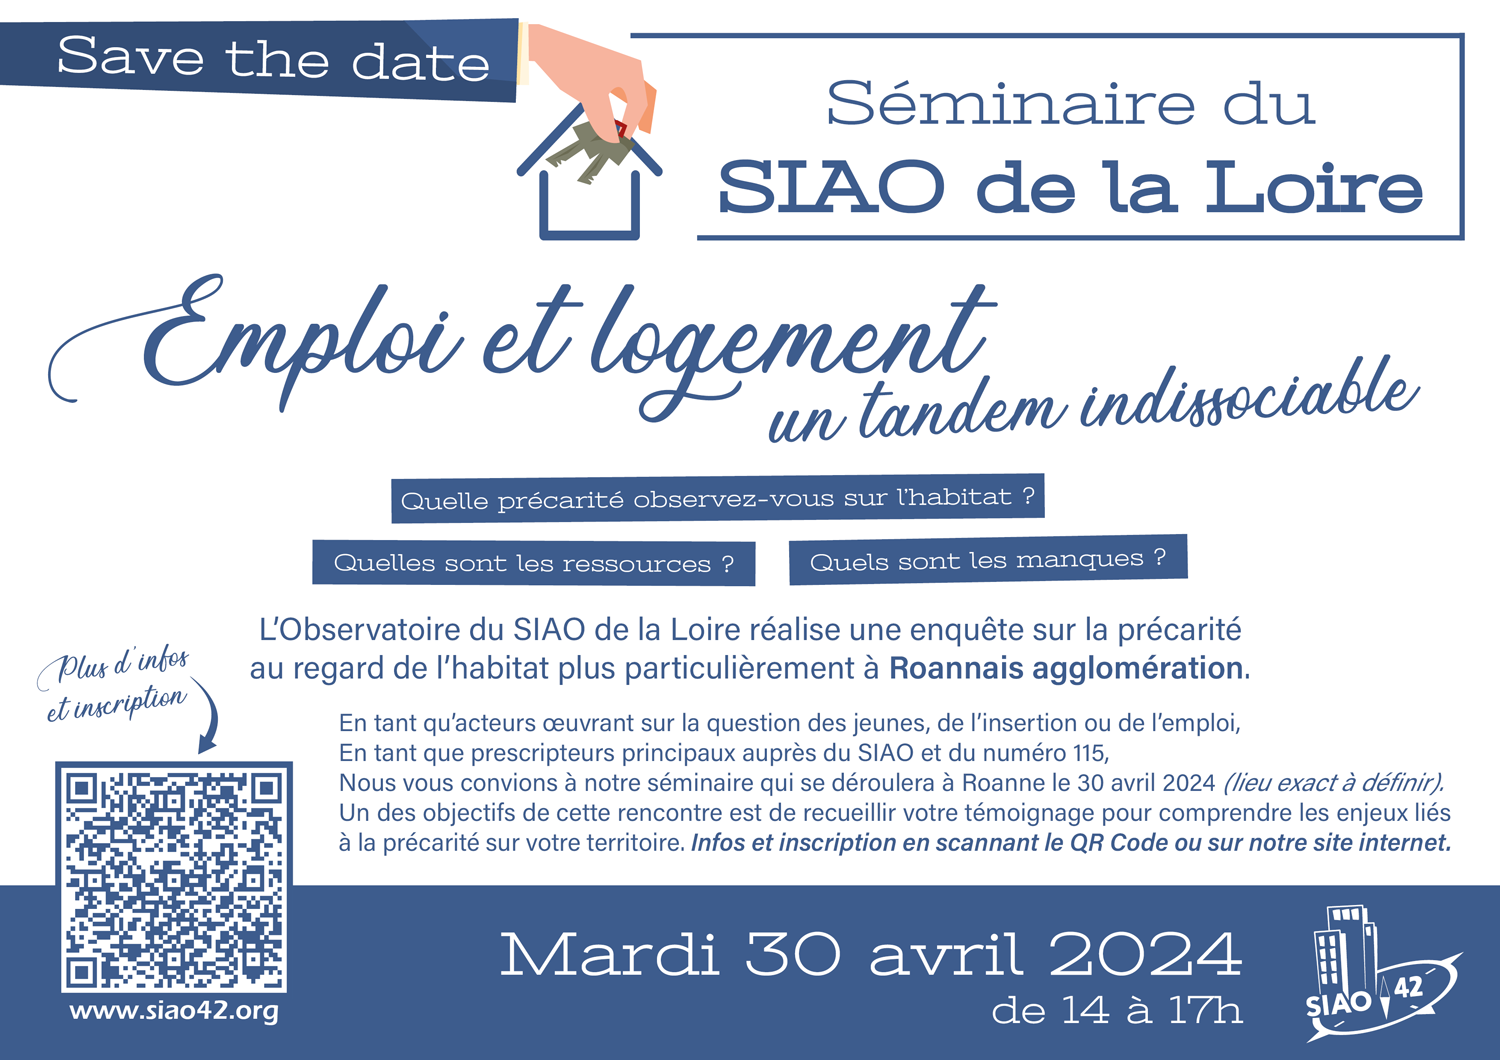 Séminaire Emploi et logement : un tandem indissociable - Séminaire du SIAO de la Loire à Roanne, mardi 30 avril 2024 (Save the date)